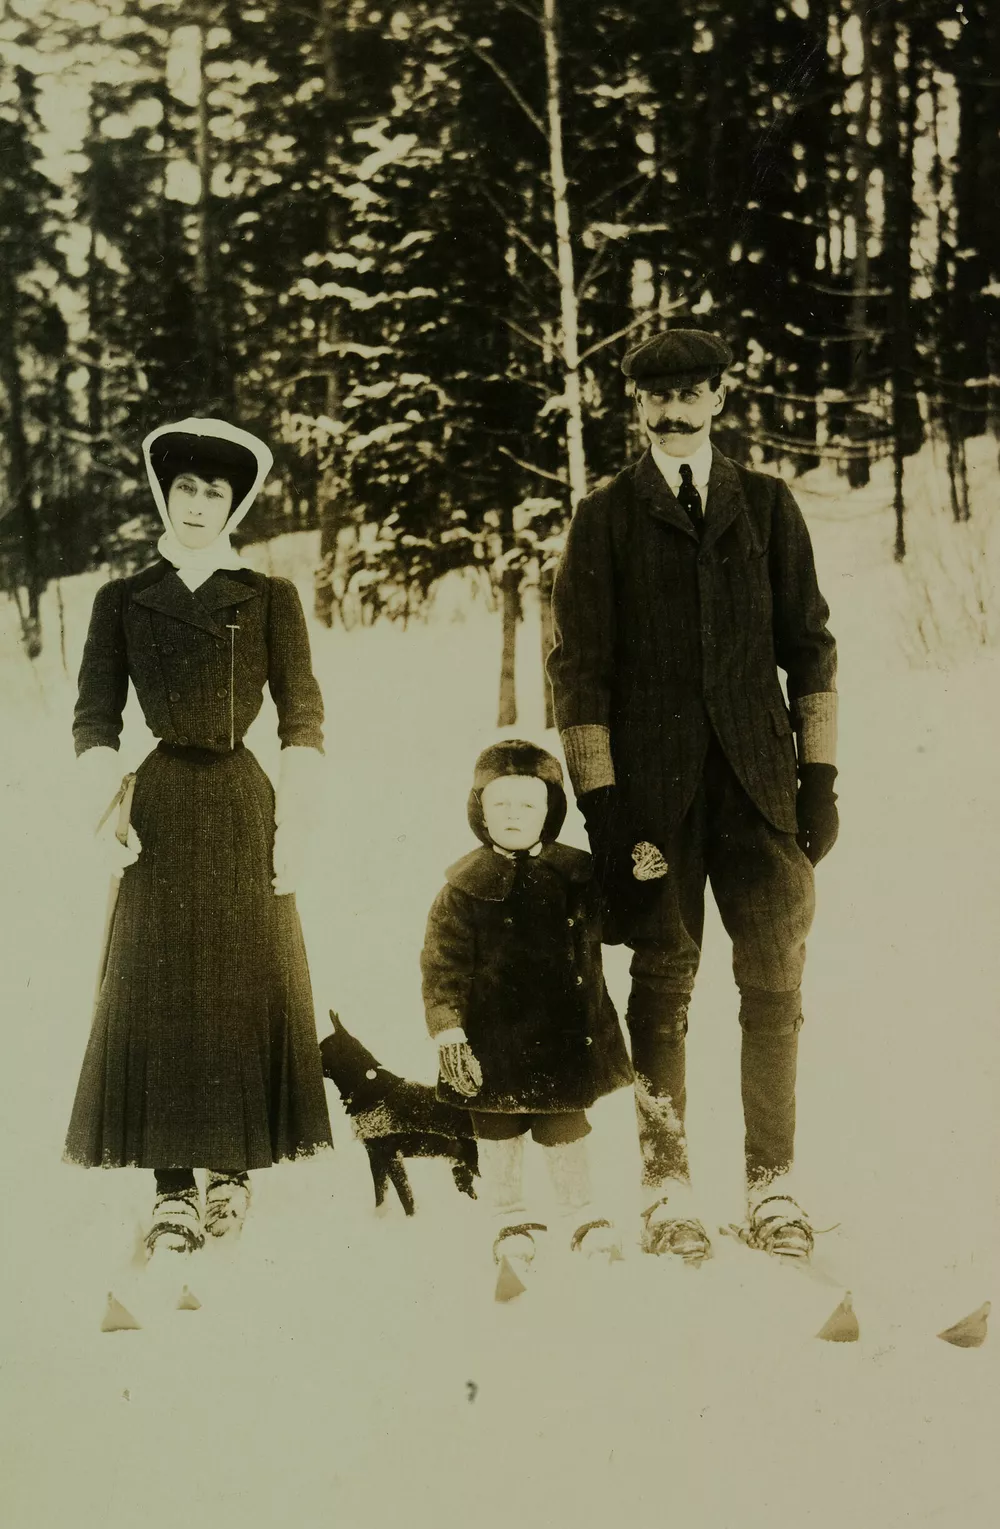 Королева Мод, принц Улаф и король Хокон VII в 1907 году.